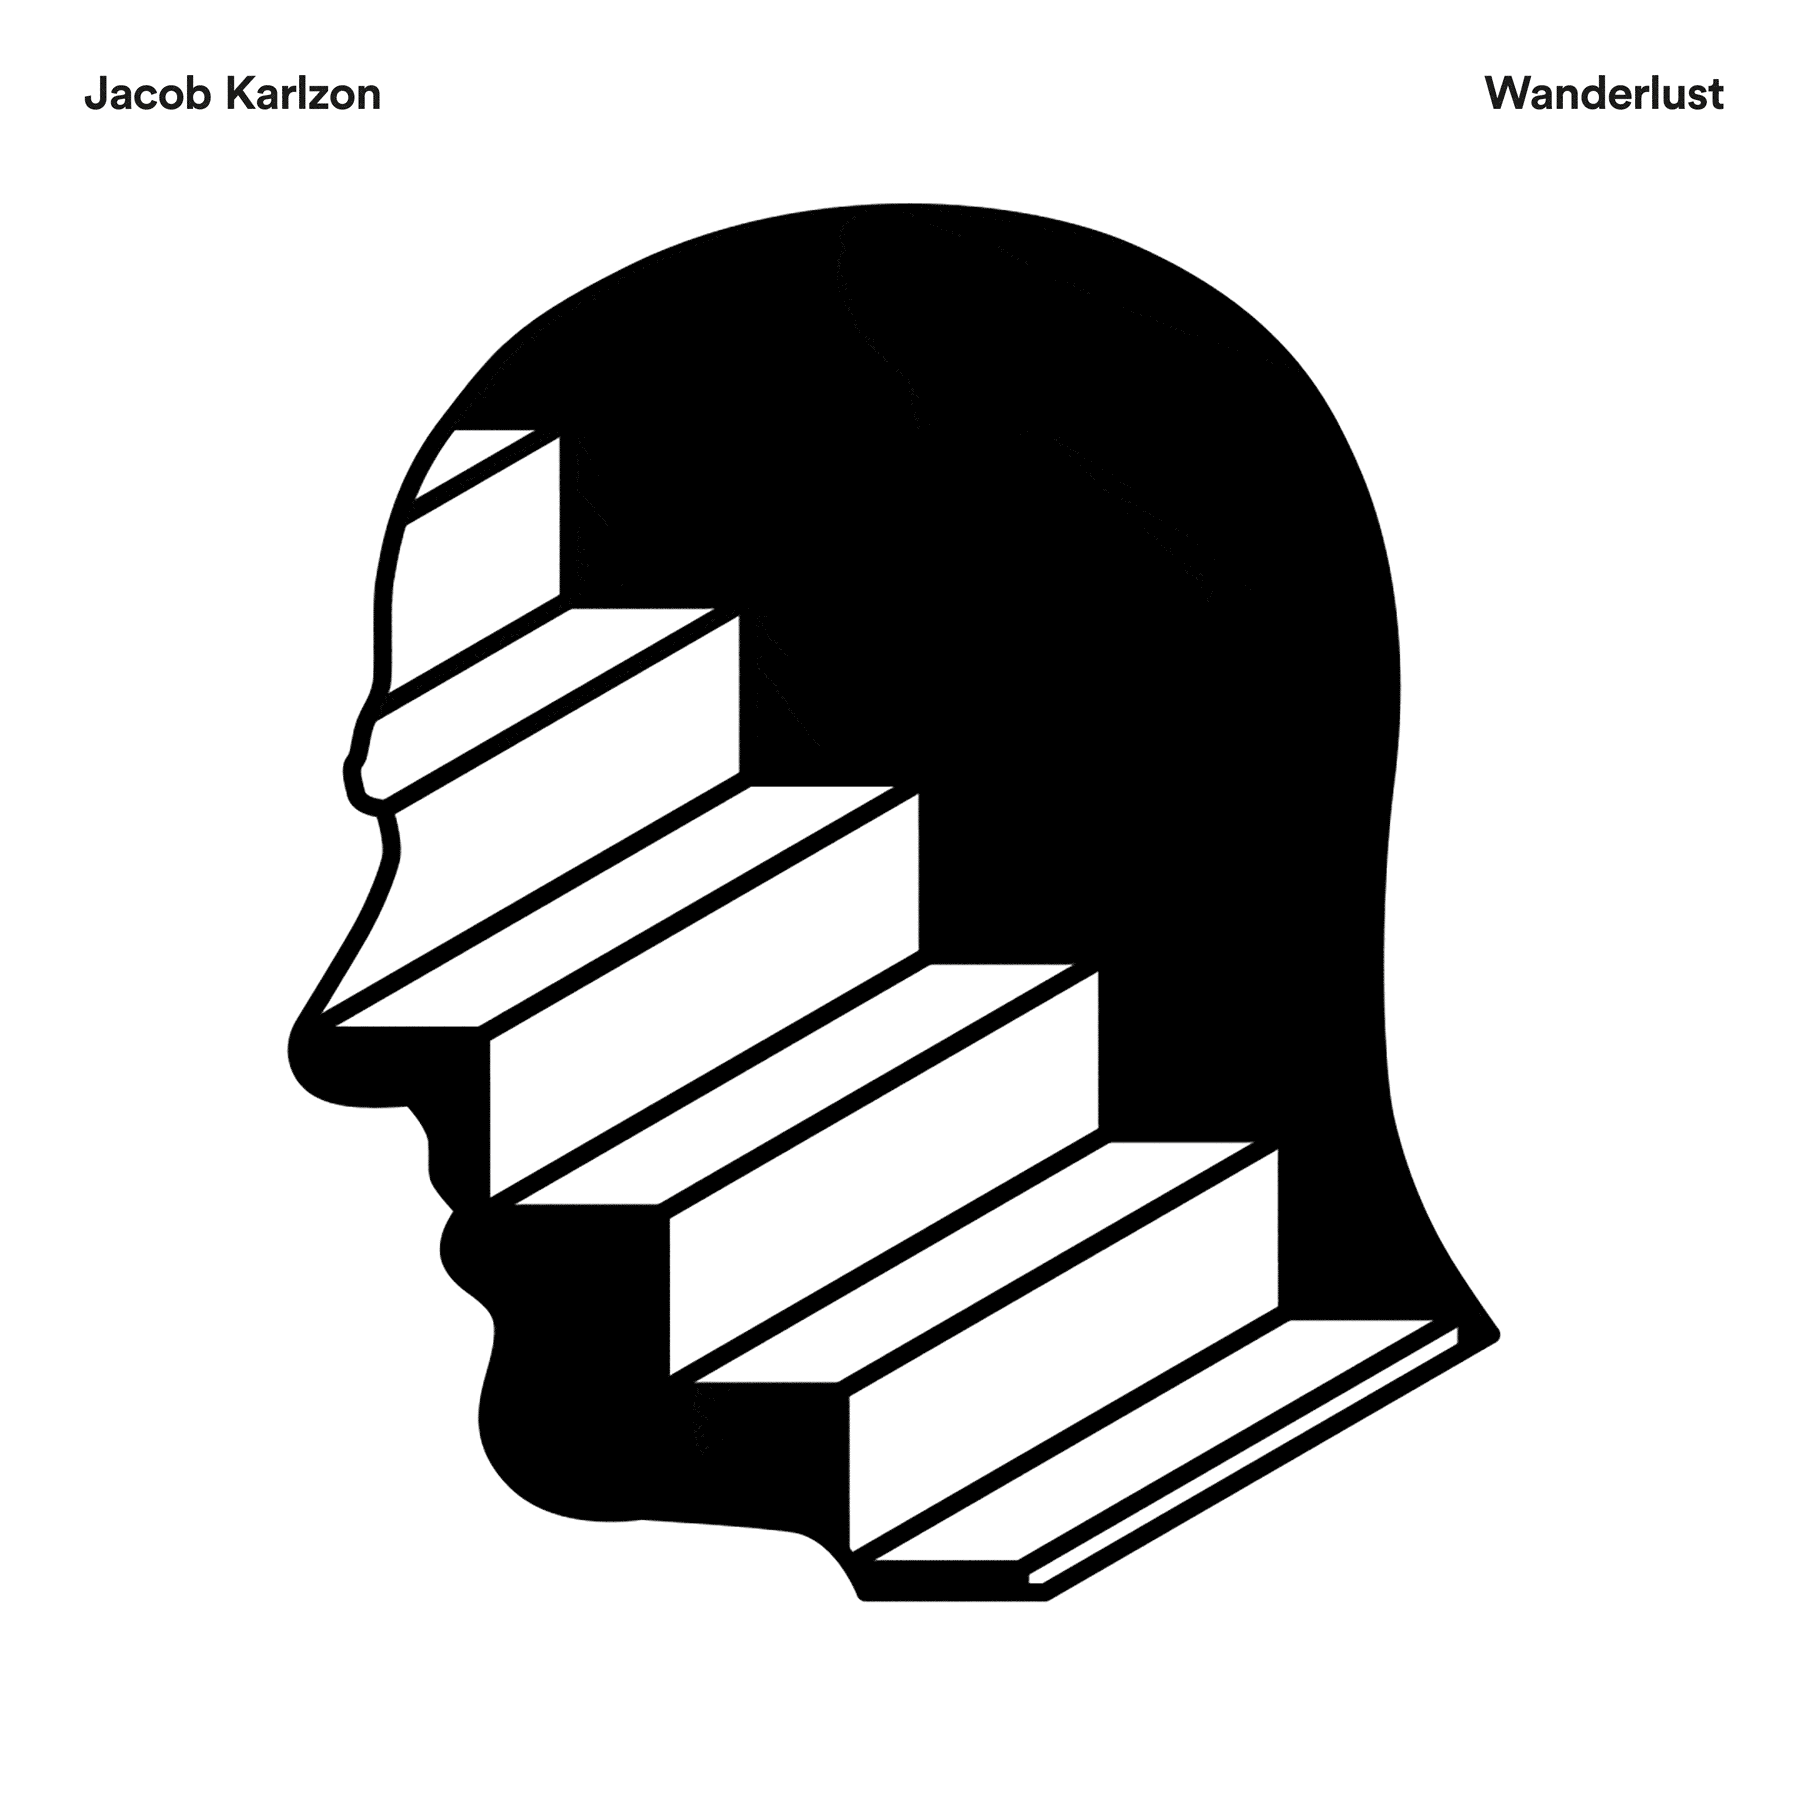 Aufgabenstellung: Musikdesign | Kunde: Warner Music Group | Jahr: 2022 | Projekt: Jacob Karlzon. Wanderlust.